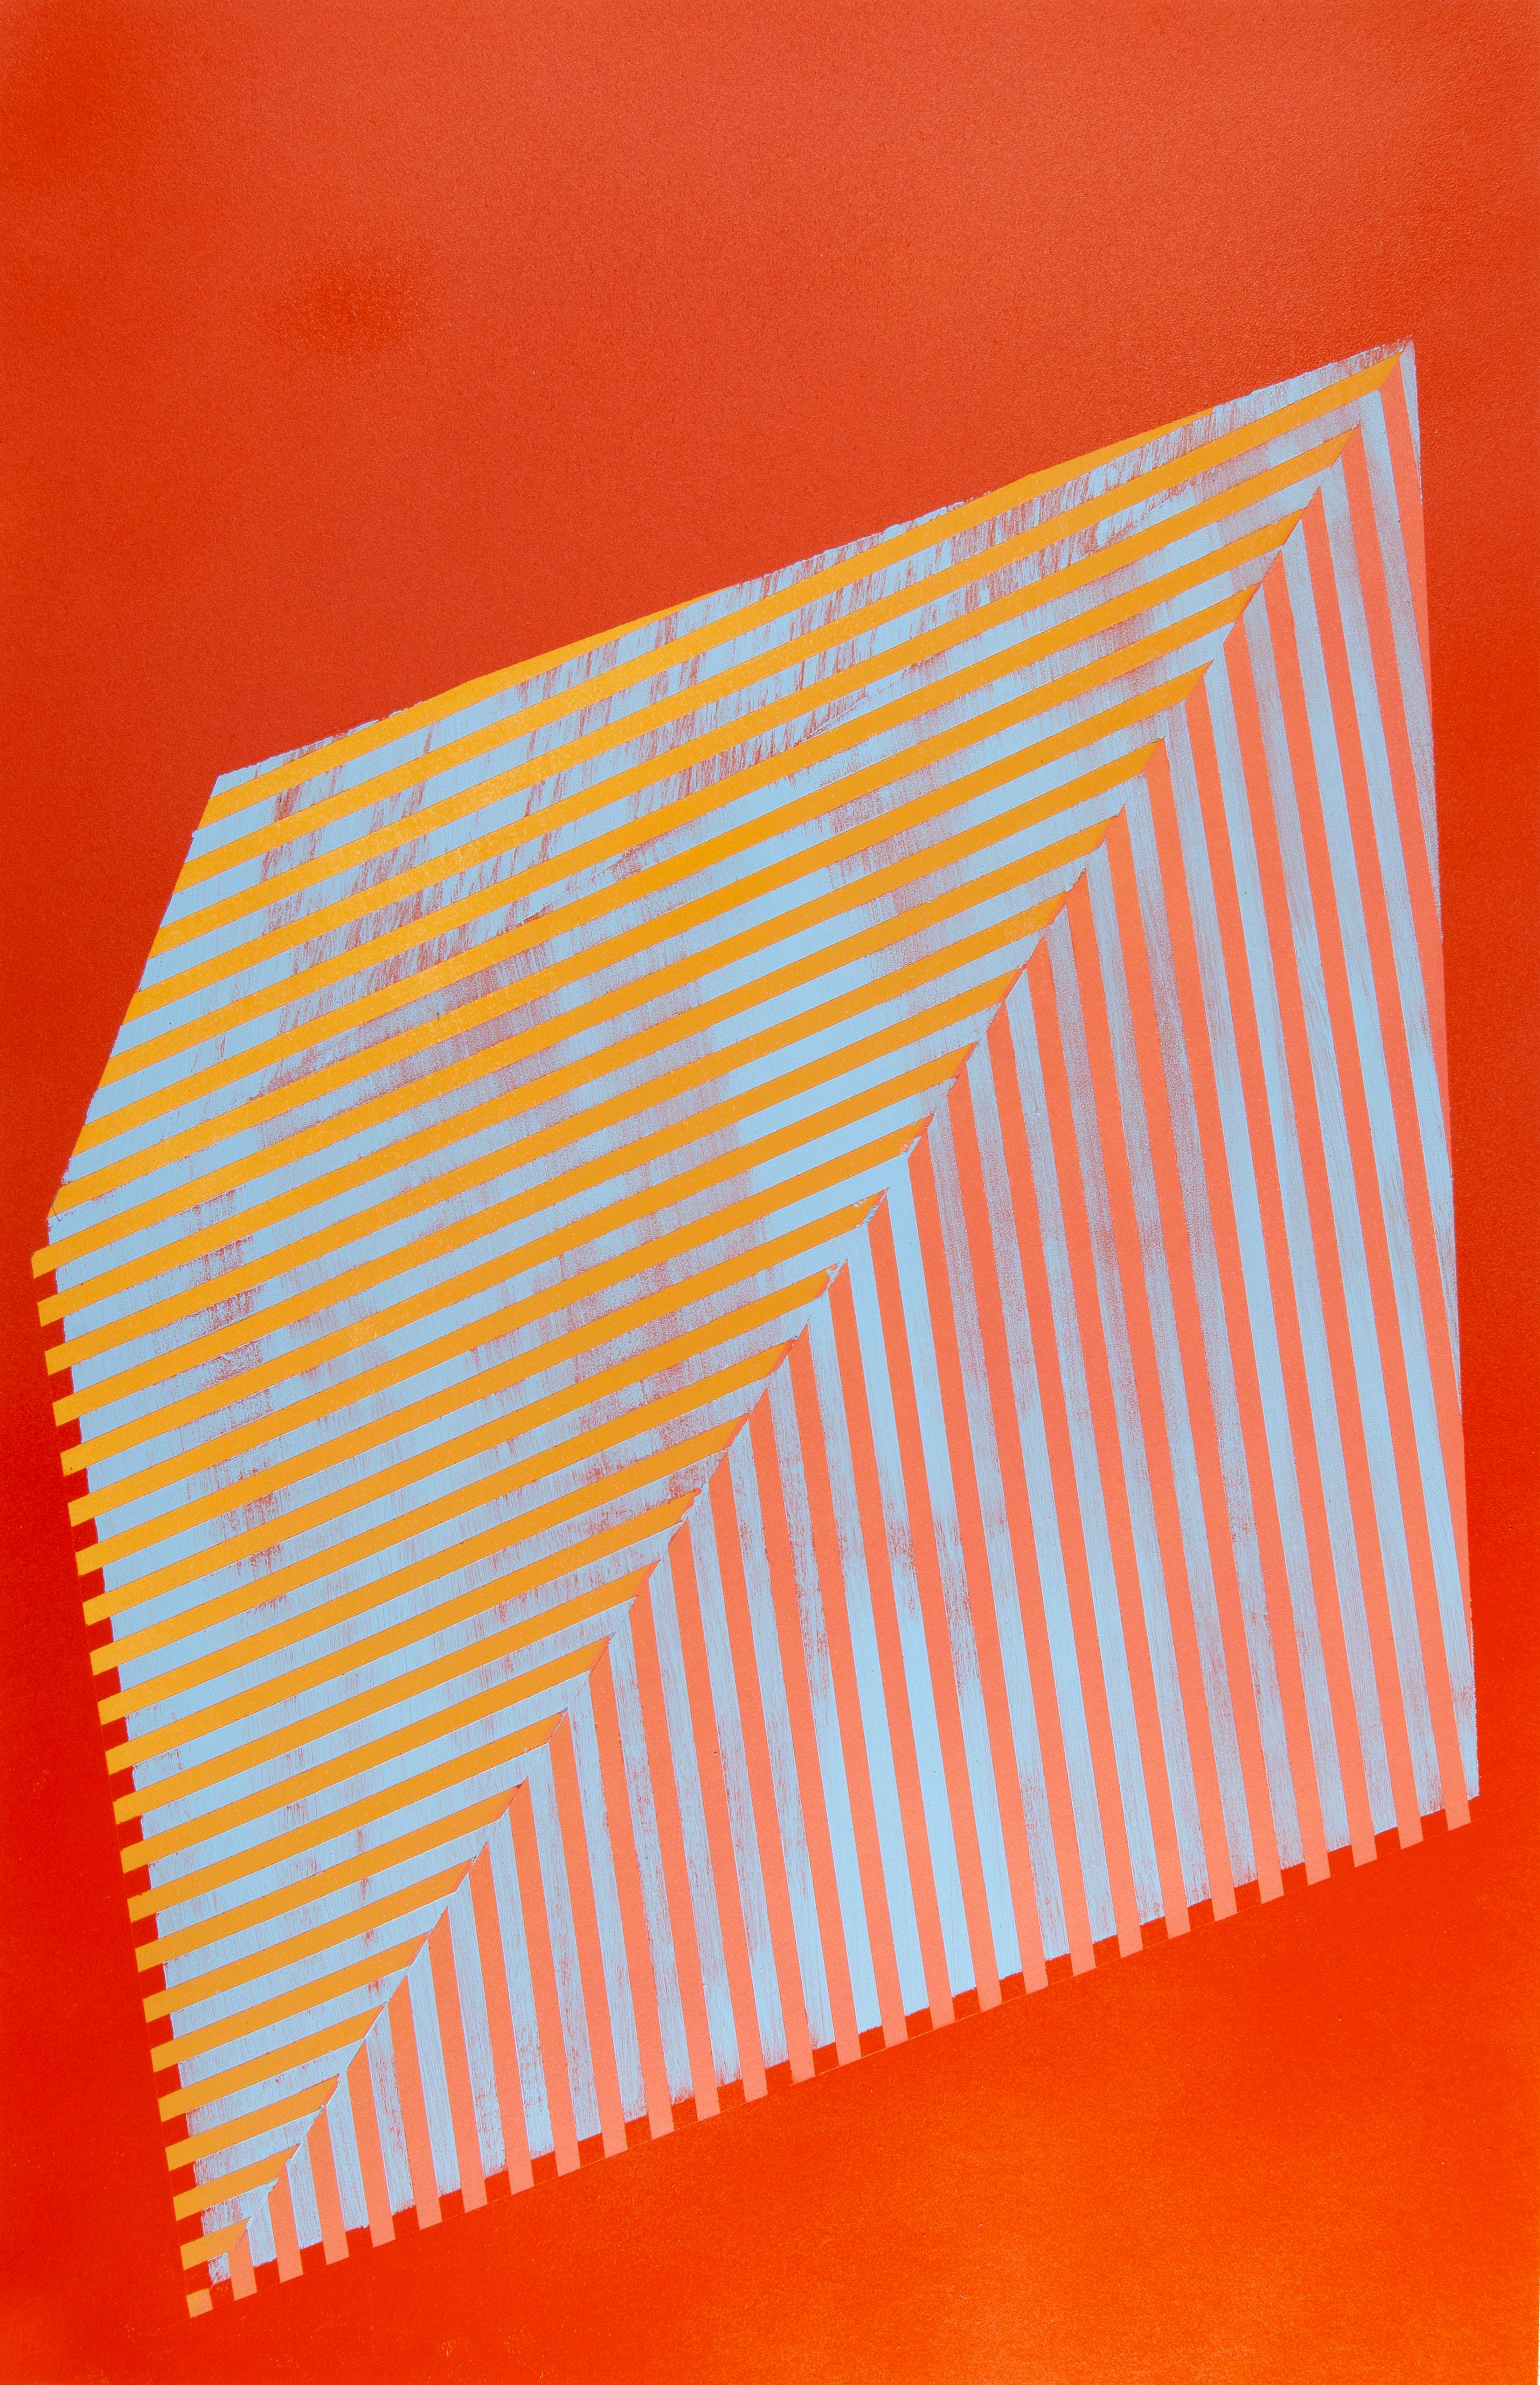 Figurative Painting Jay Walker - Polygone prismatique XV : peinture géométrique abstraite avec motif linéaire, rouge, orange